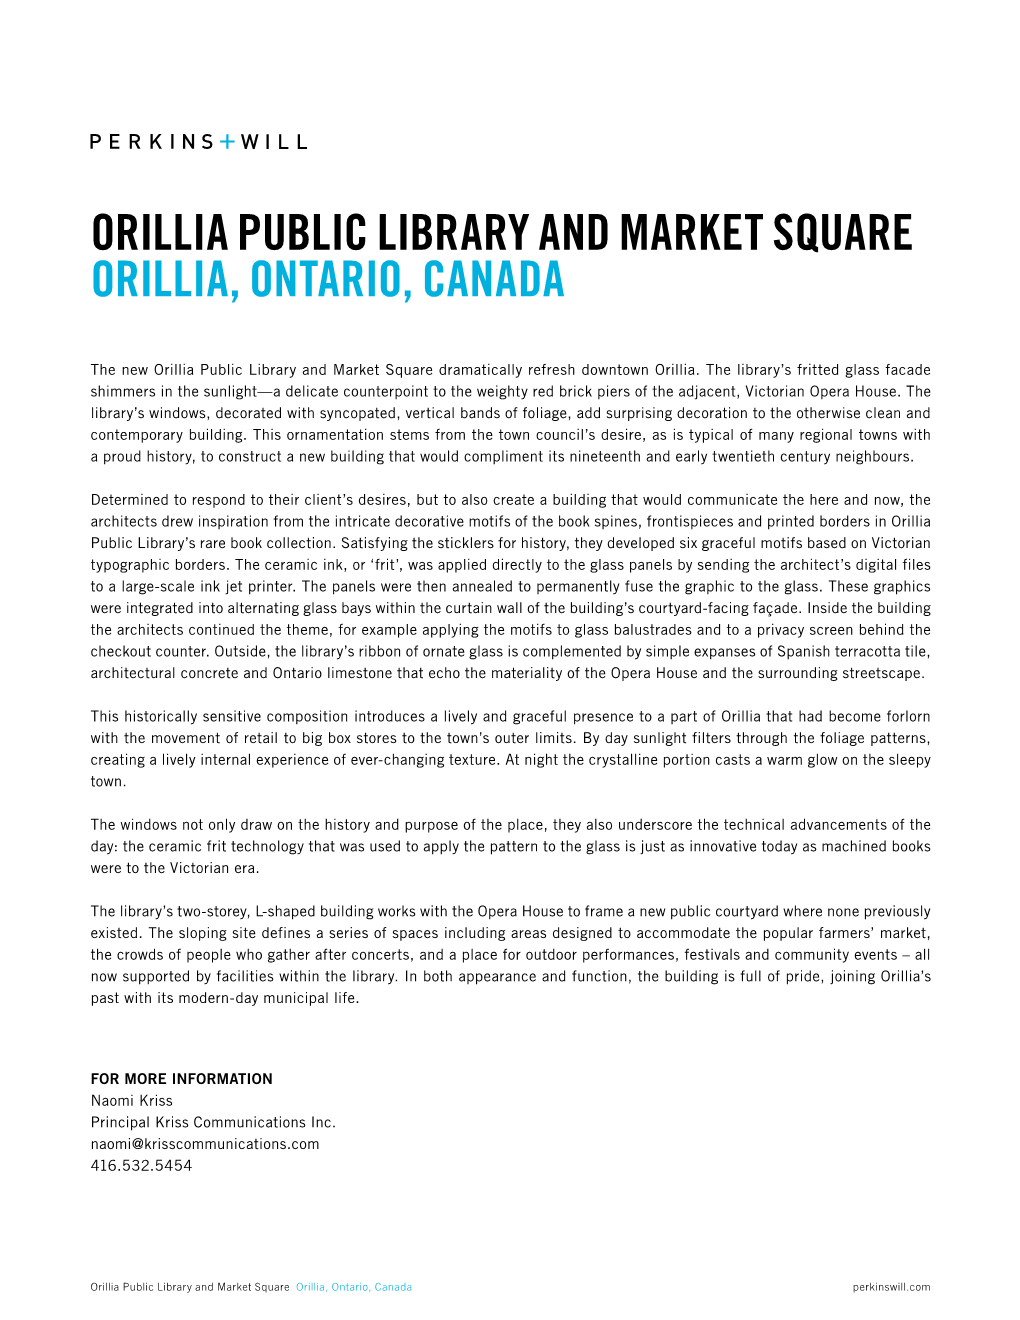 Orillia Public Library and Market Square Orillia, Ontario, Canada